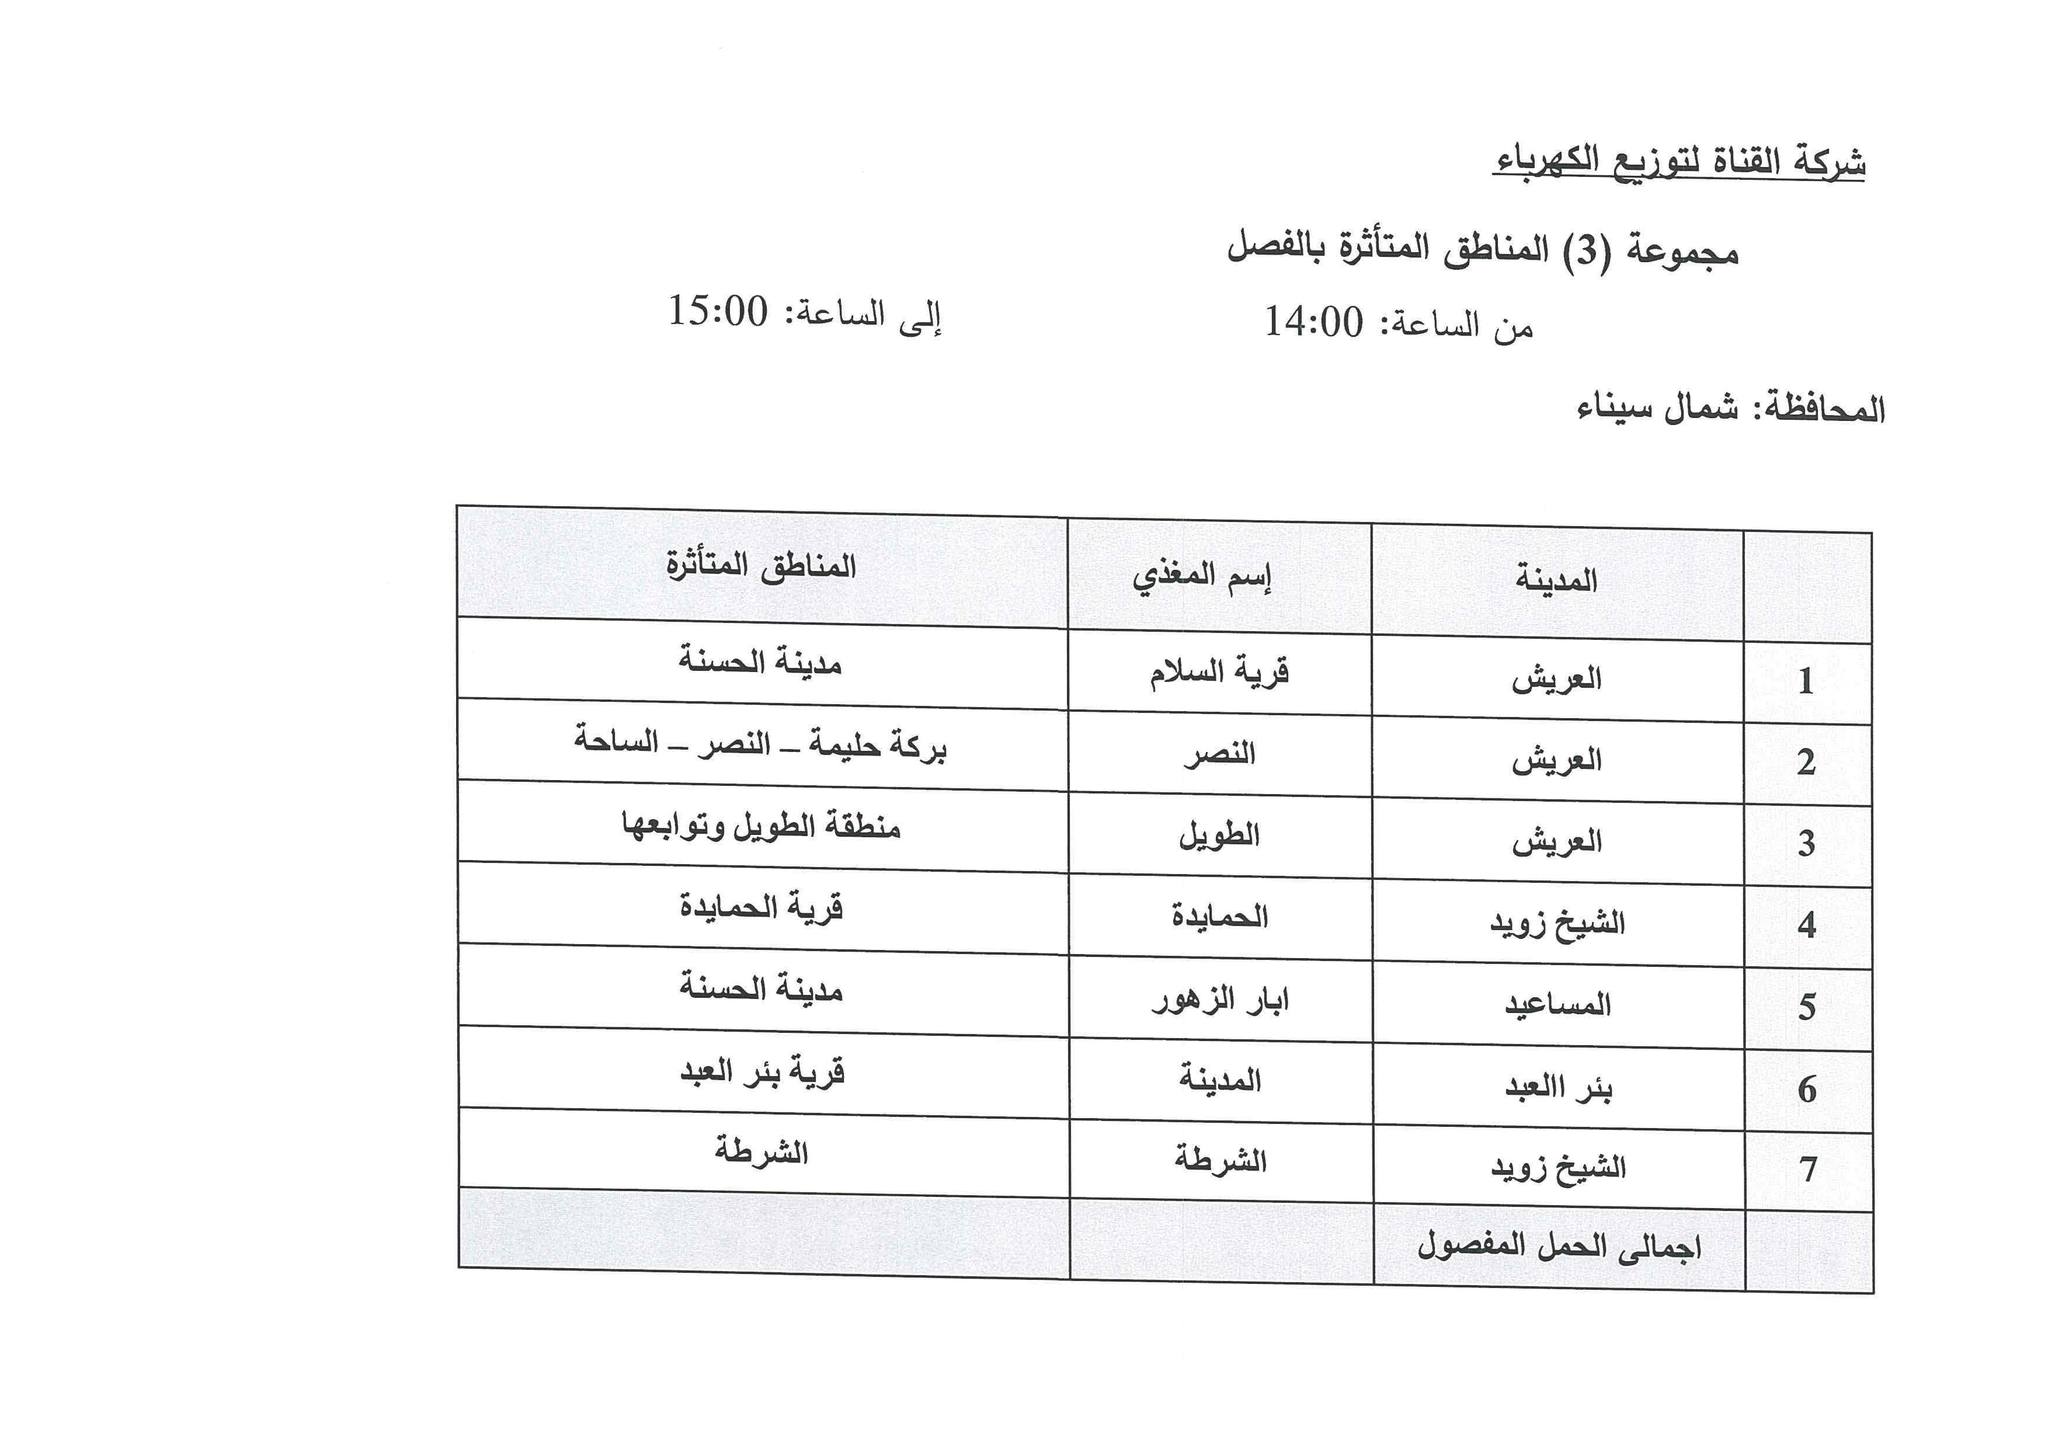 جدول مواعيد تخفيف الأحمال الكهربائية فى محافظة شمال سيناء (2)